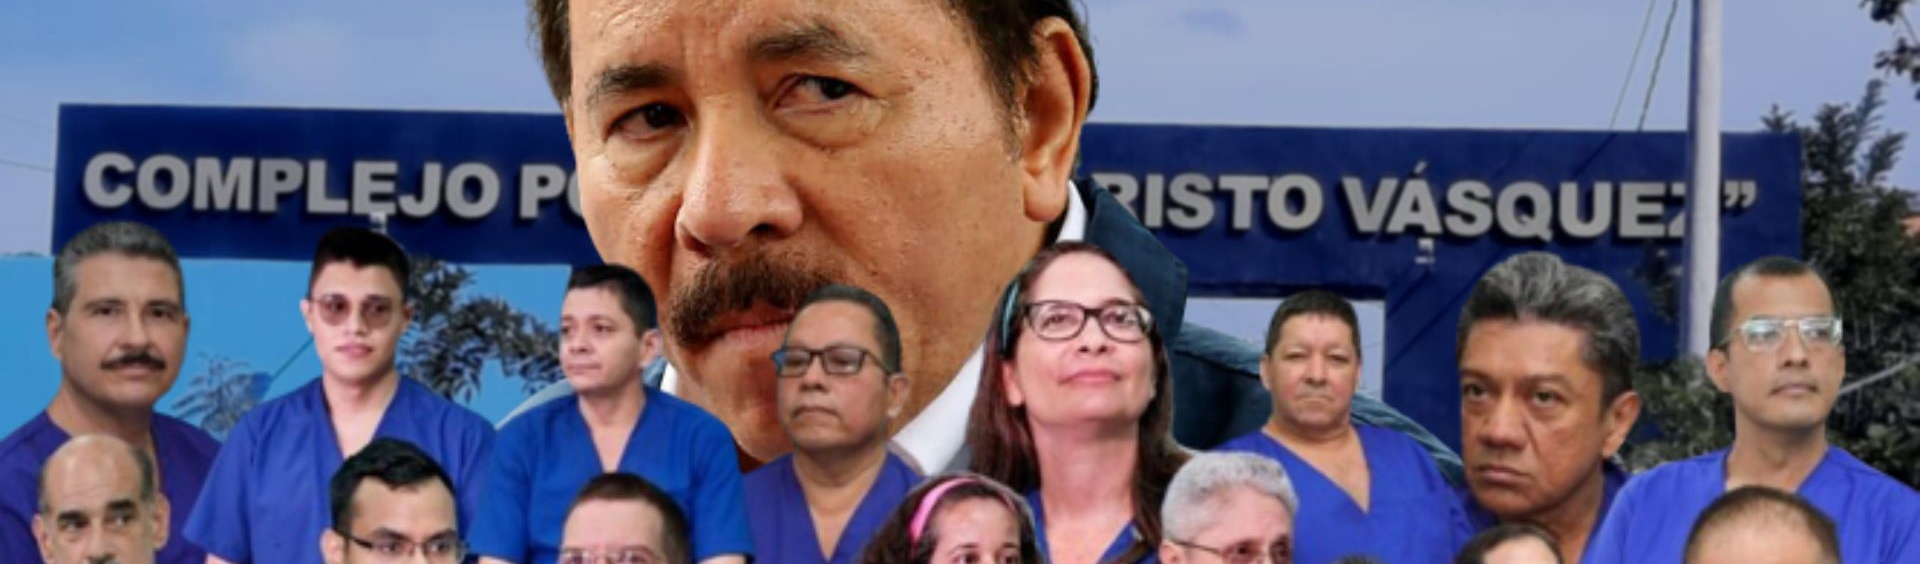 Opositores de Ortega enviados aos EUA relatam experiências após libertação